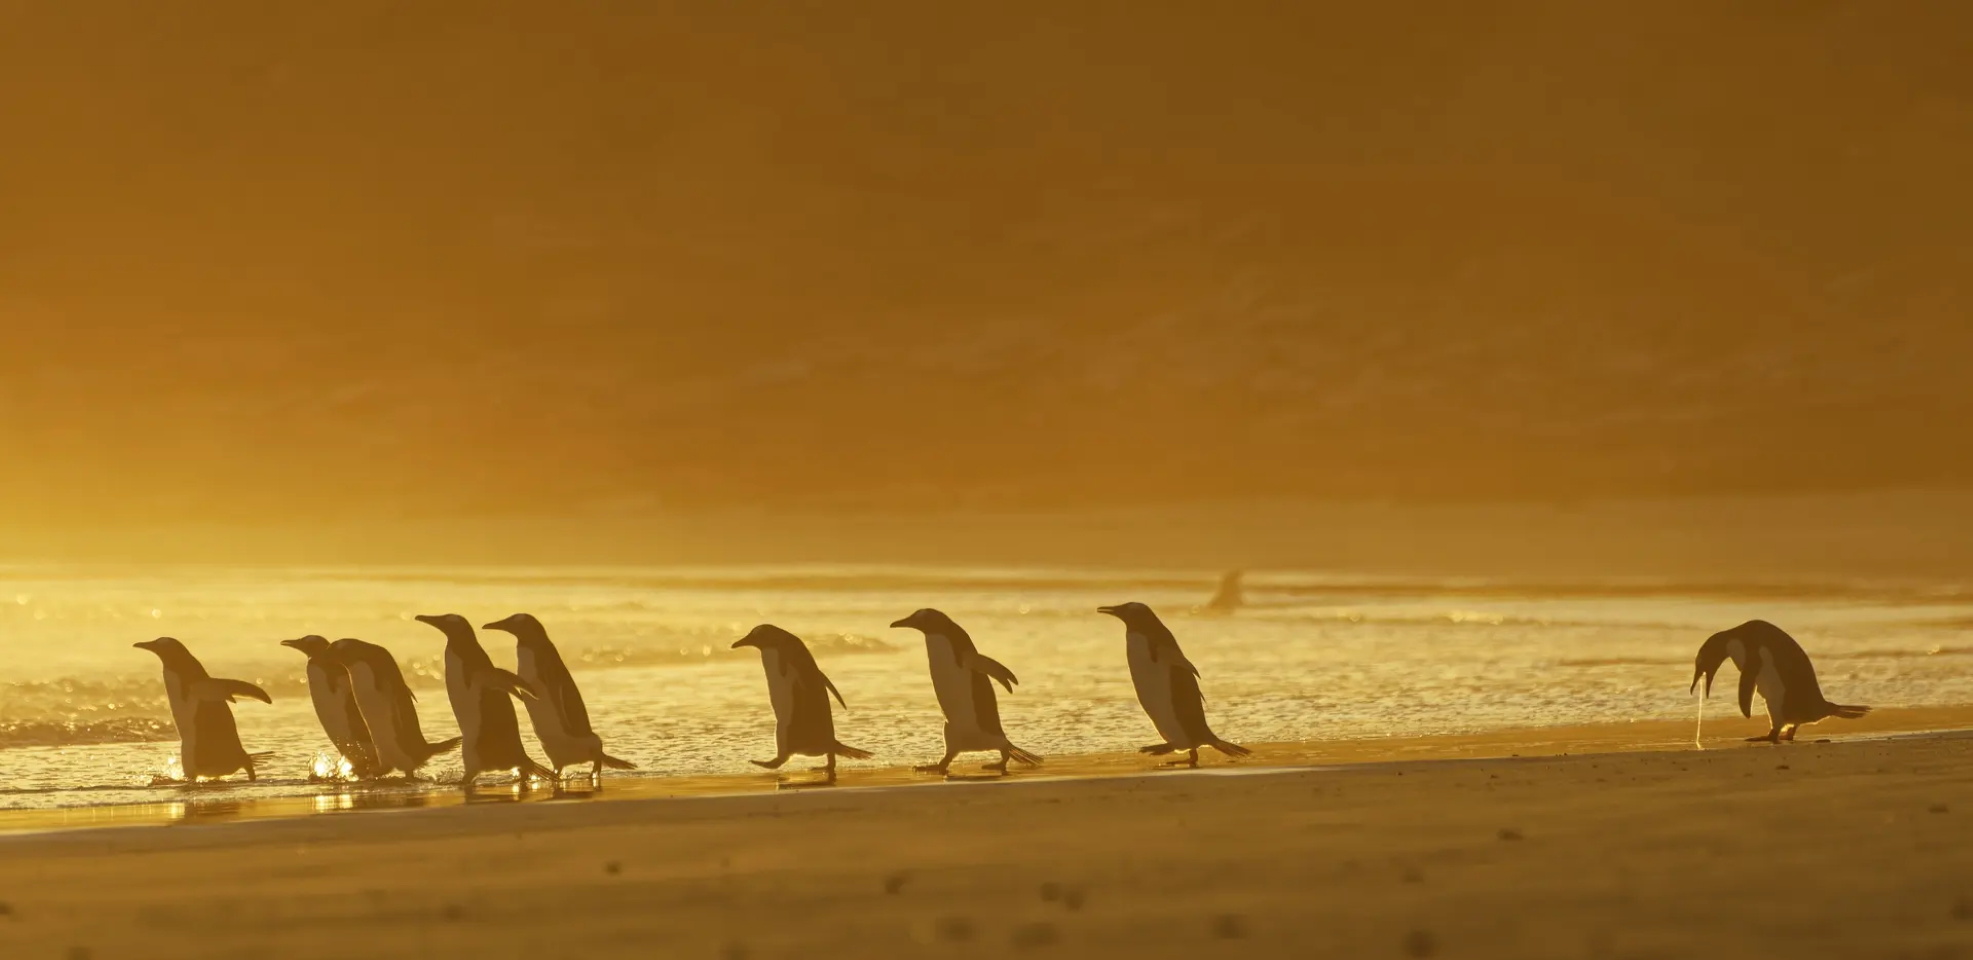 Стошнило, Фолклендские острова.
«Этот снимок сделан на восходе солнца. Группа пингвинов вышла на берег ловить рыбу, когда один из них остановился и его вырвало». Фото: Christina Holfelder/CWPAs 2020